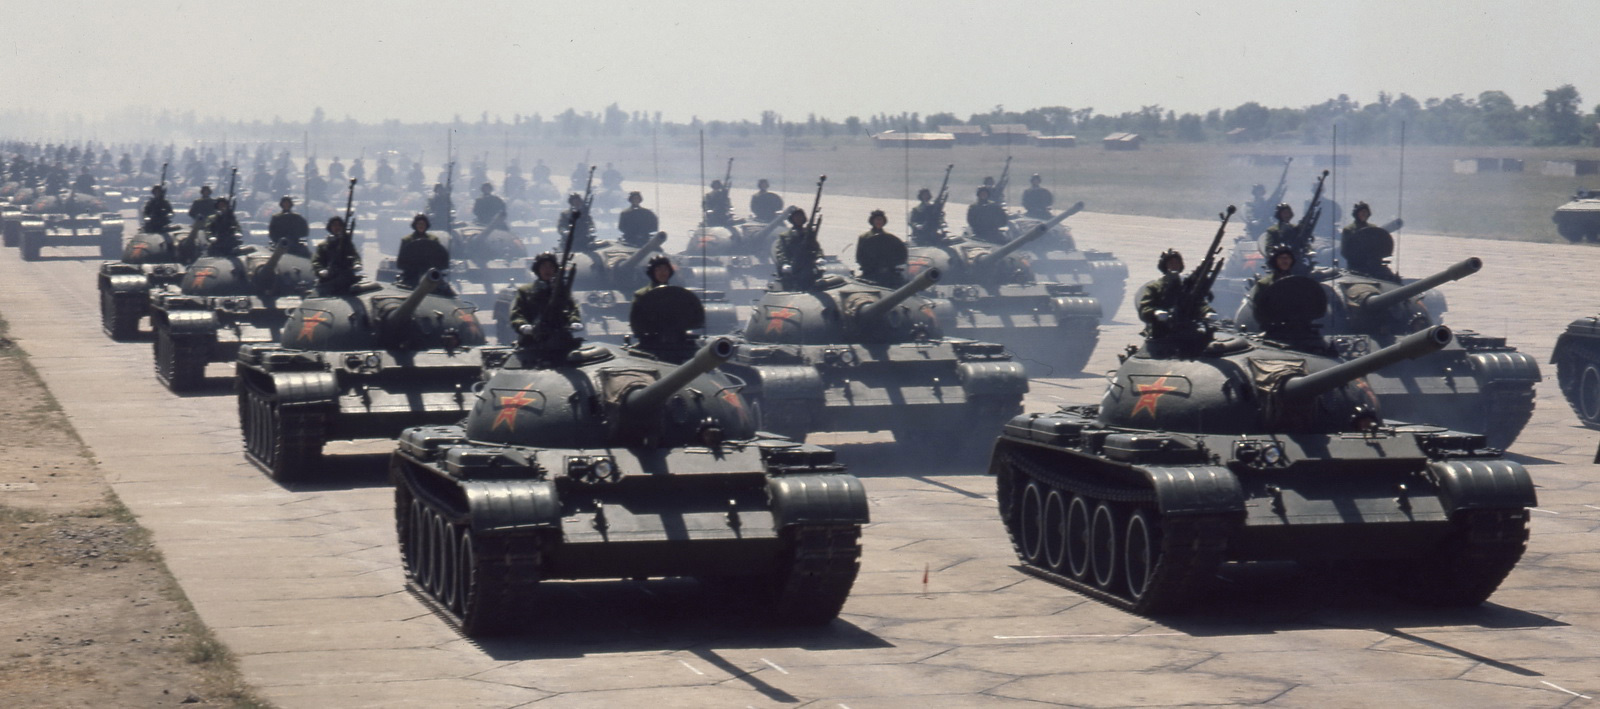 1984年，中华人民共和国国庆35周年阅兵在北京举行。图为坦克方队。 乔天富摄